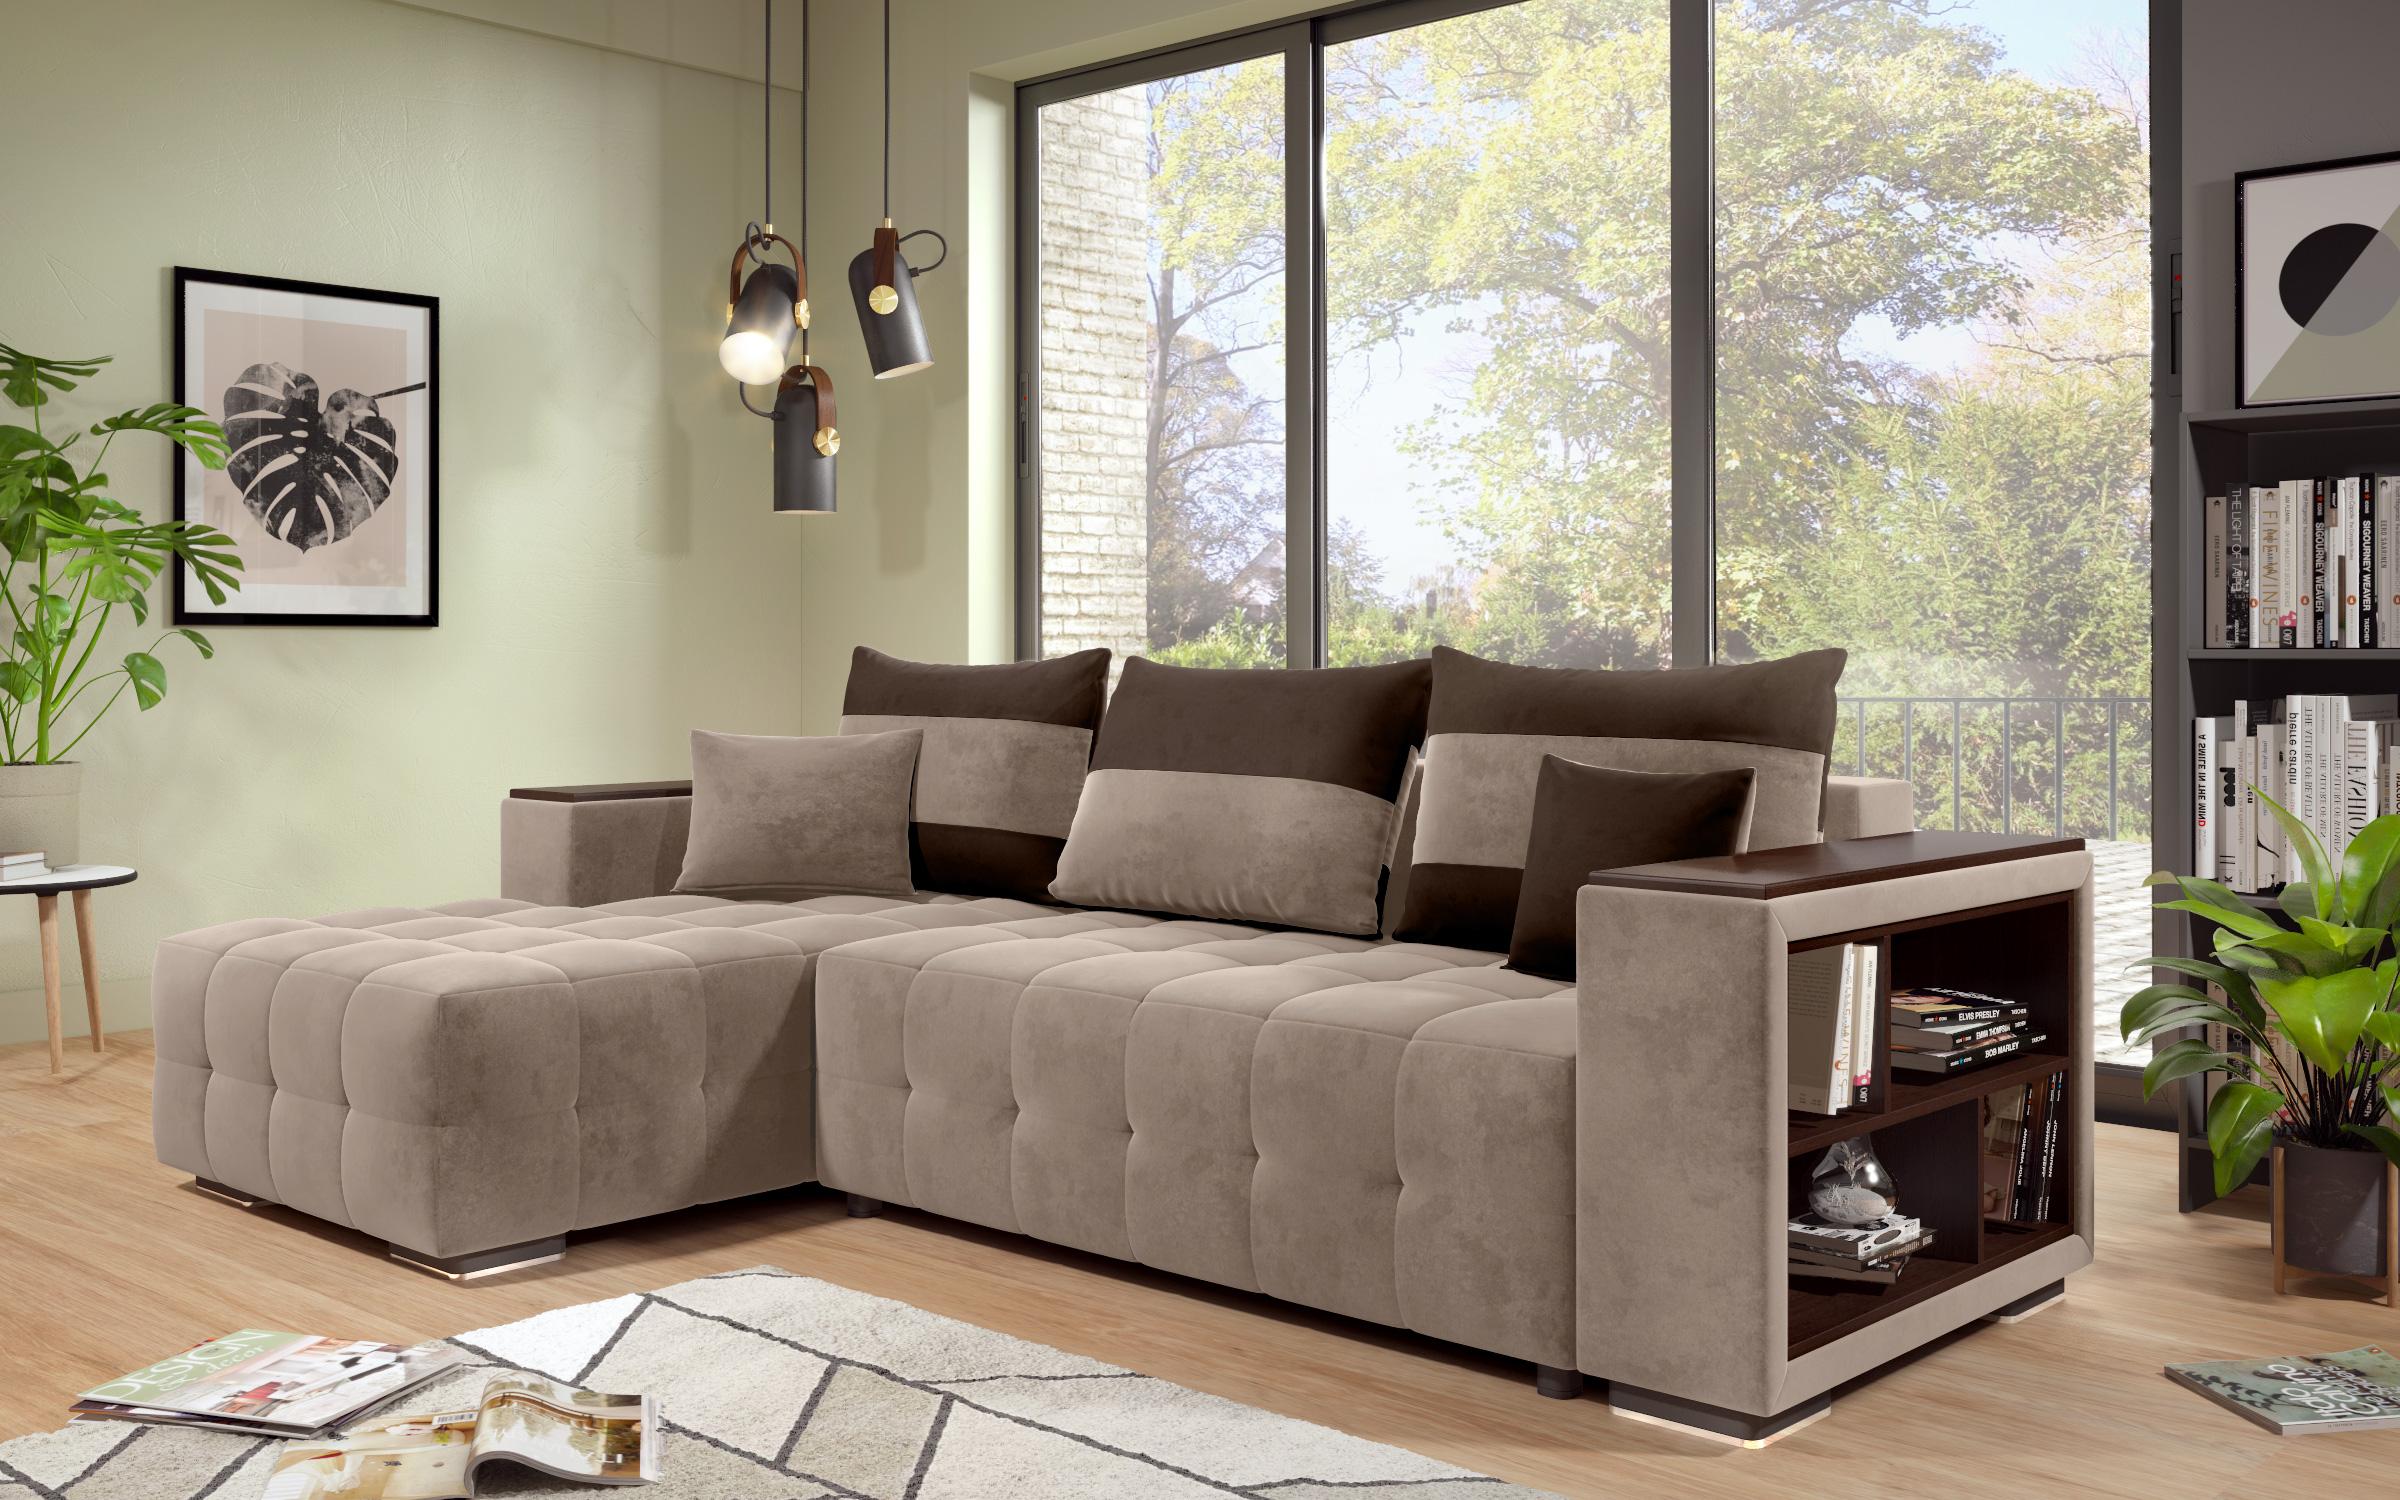 Γωνιακός καναπές - κρεβάτι με ανάκλιντρο και μπράτσο μίνι ραφιέρα Melvin S, σκούρο μπεζ + σκούρο καφέ  9